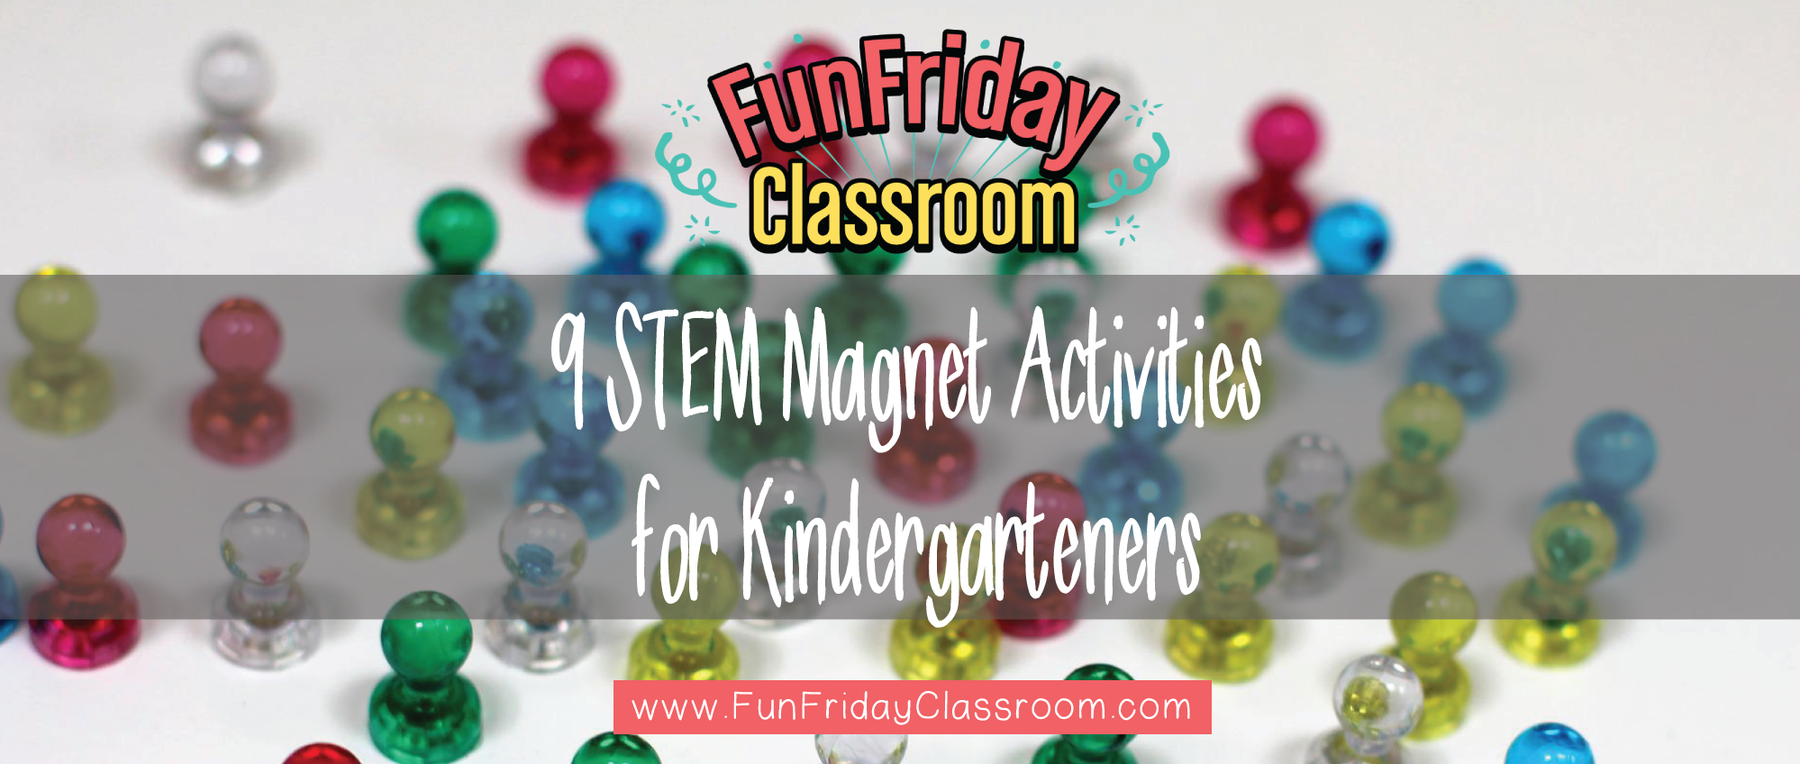 9 STEM Magnet Activities for Kindergarteners